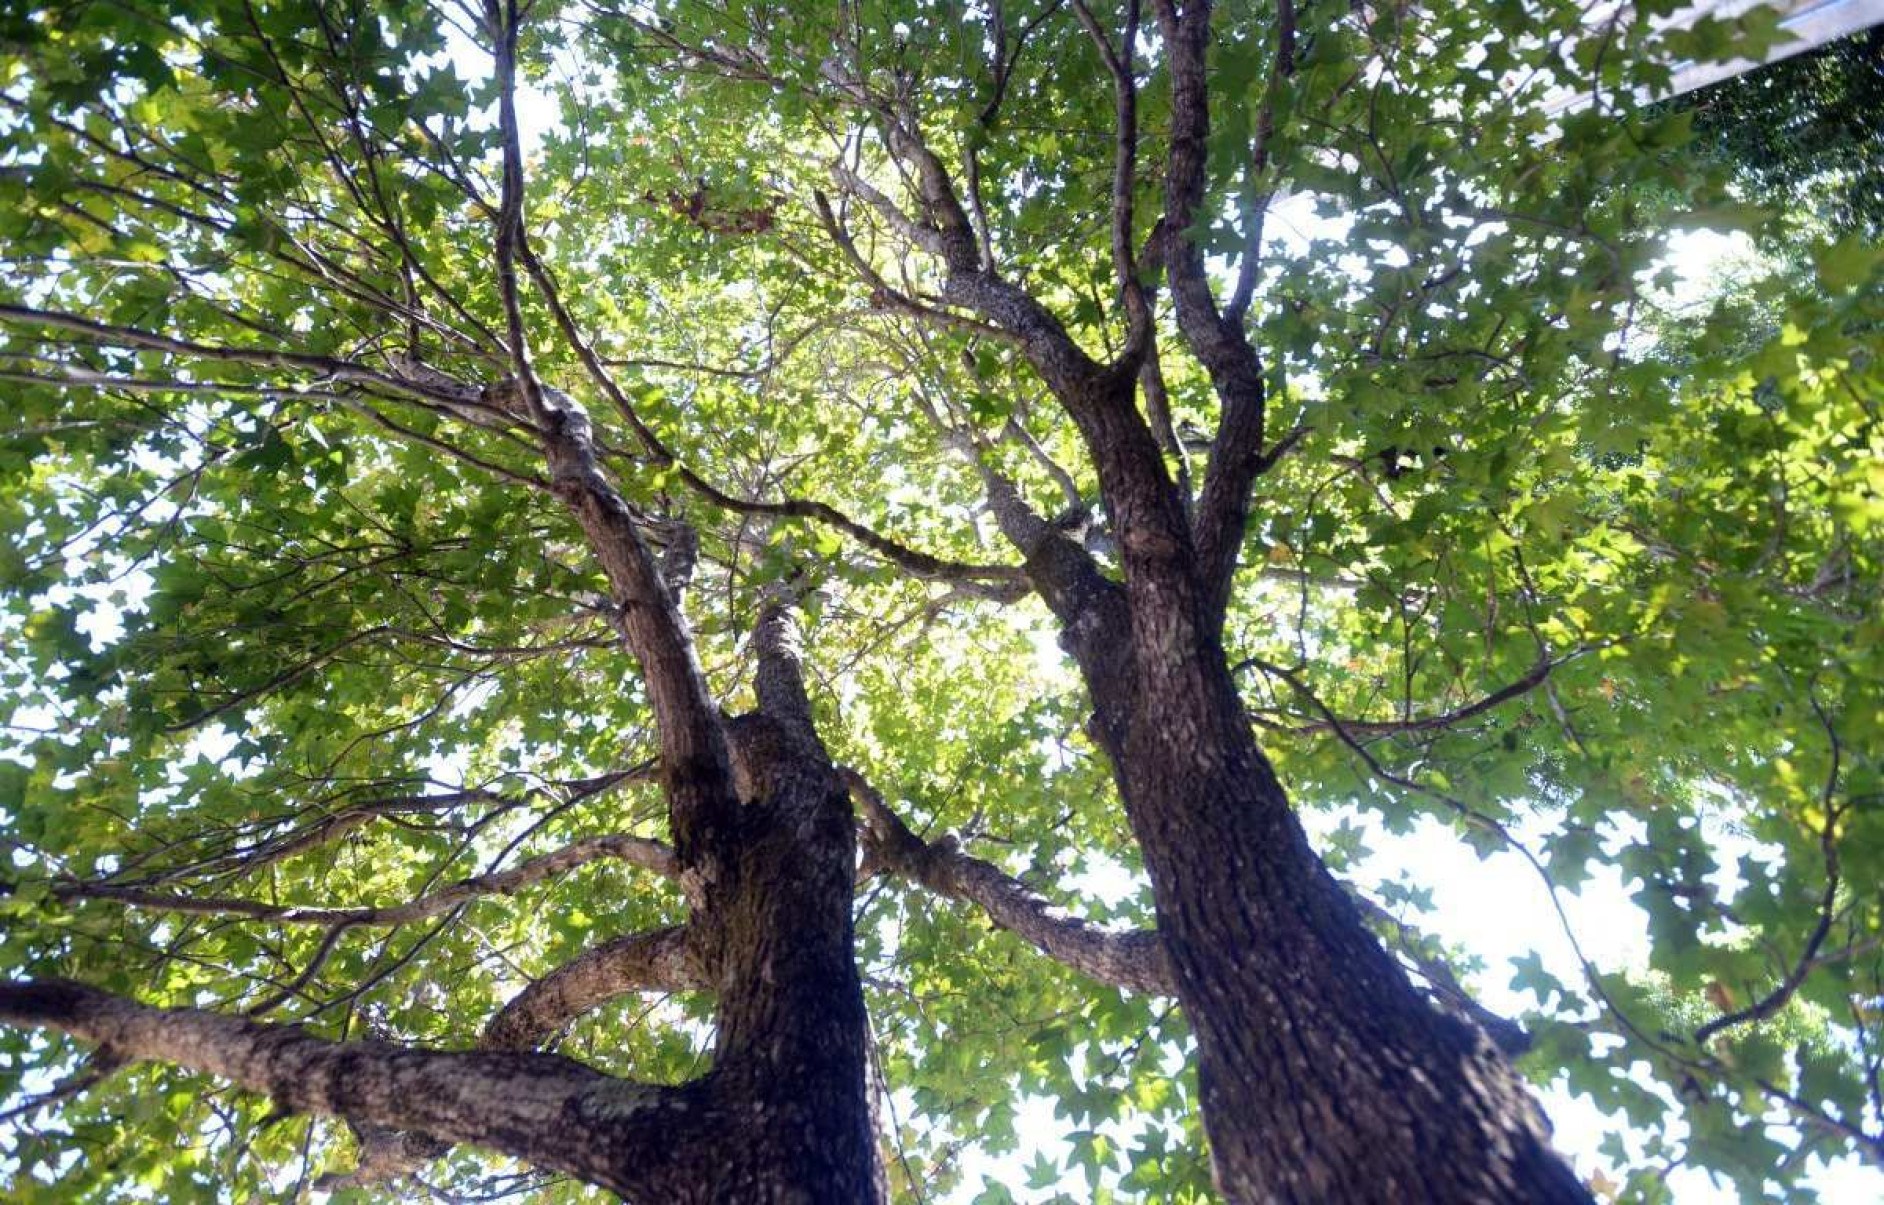 Sabia que uma árvore do Bosque do Ibama veio do espaço? Conheça a história